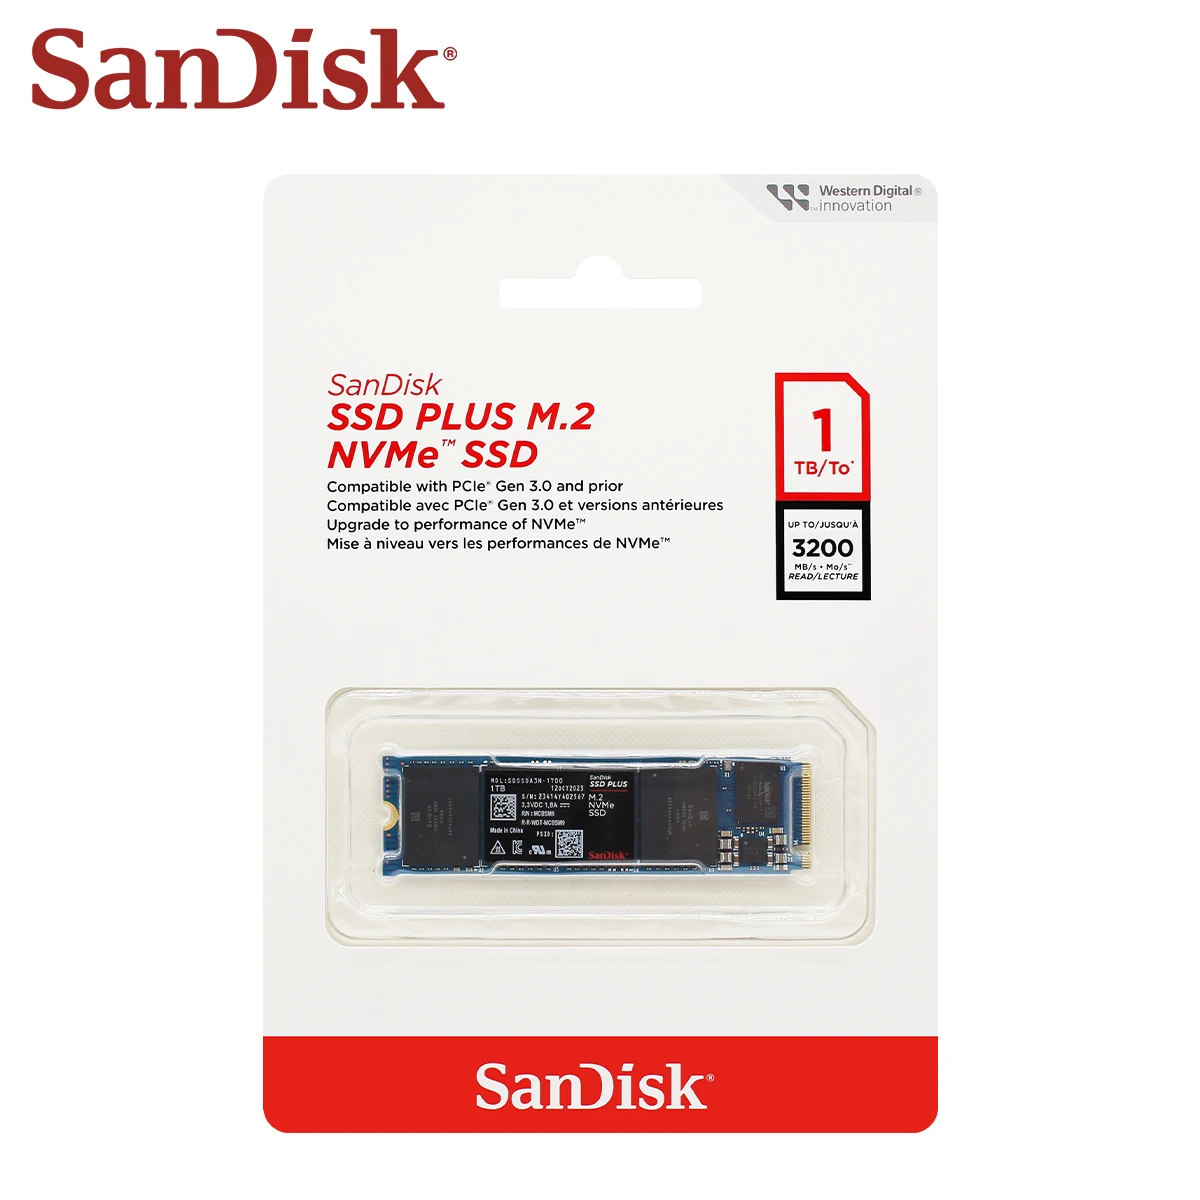 Nowy Sandisk SSD Plus M.2 SSD 250GB 500GB 1TB 2TB wewnętrzny półprzewodnikowy M.2 2280 PCIe Gen 3.0 wewnętrzny szybki ssd nvme